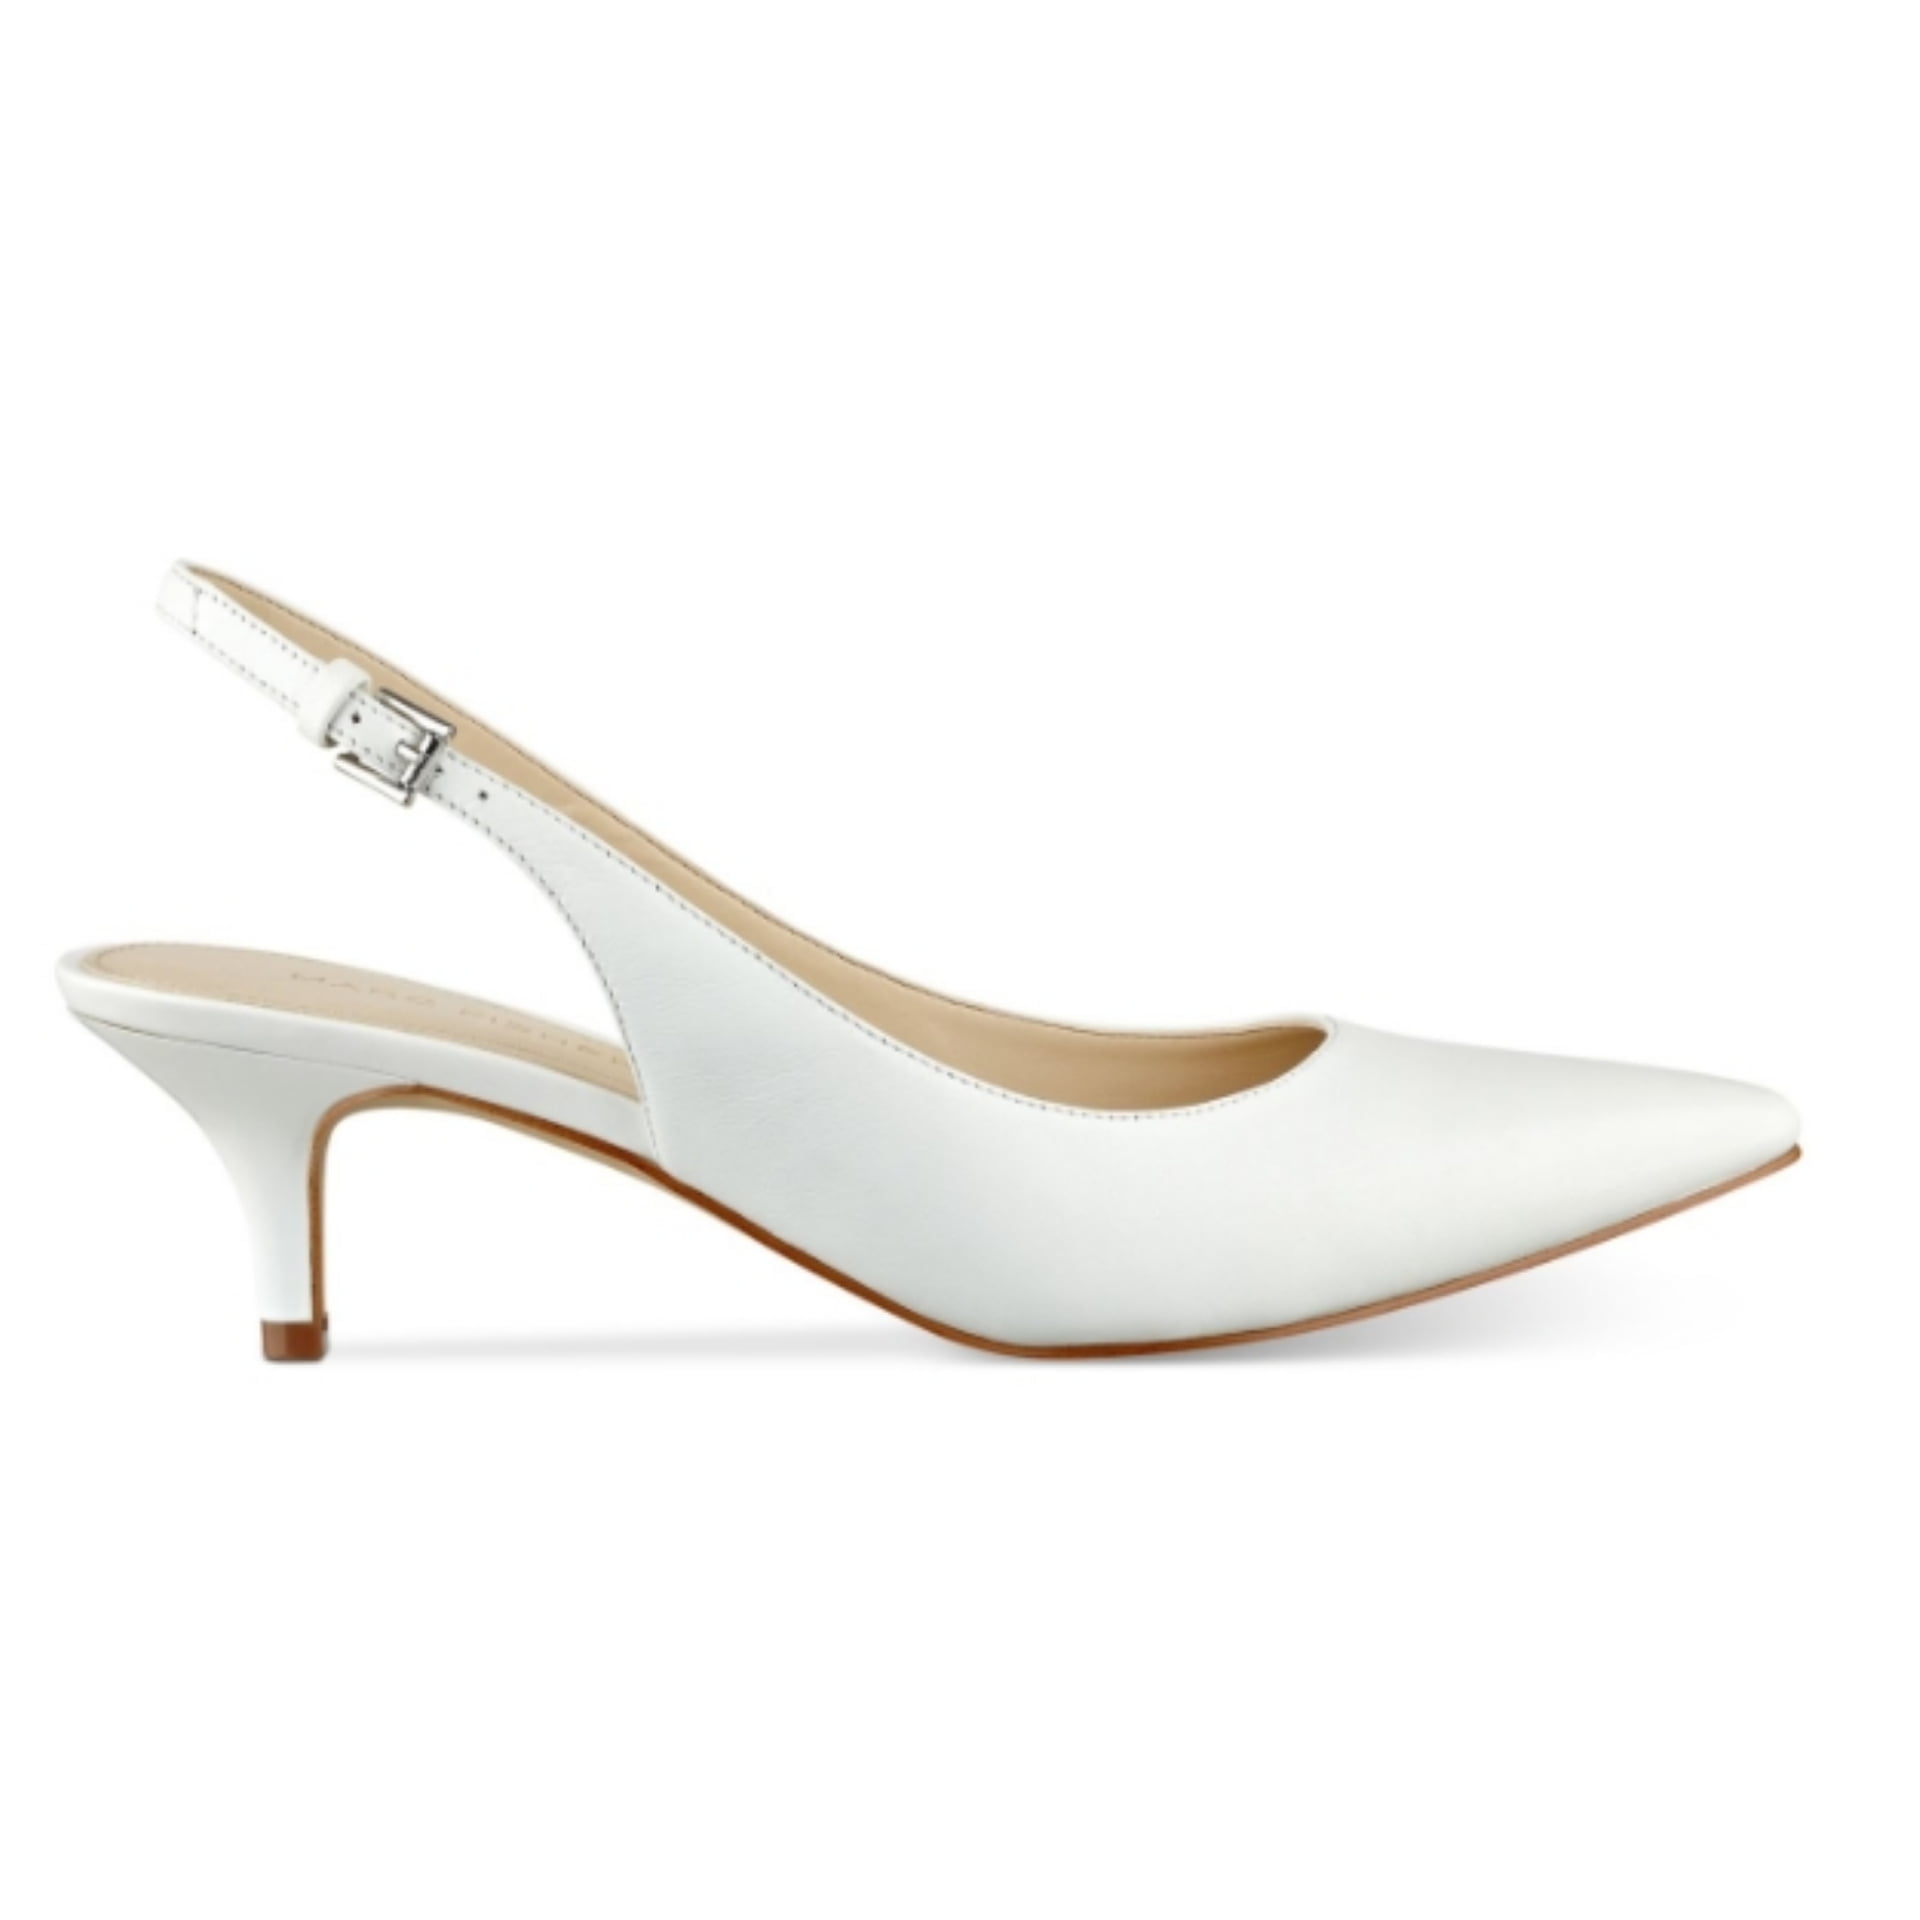 Buy > white sling back heels > in stock